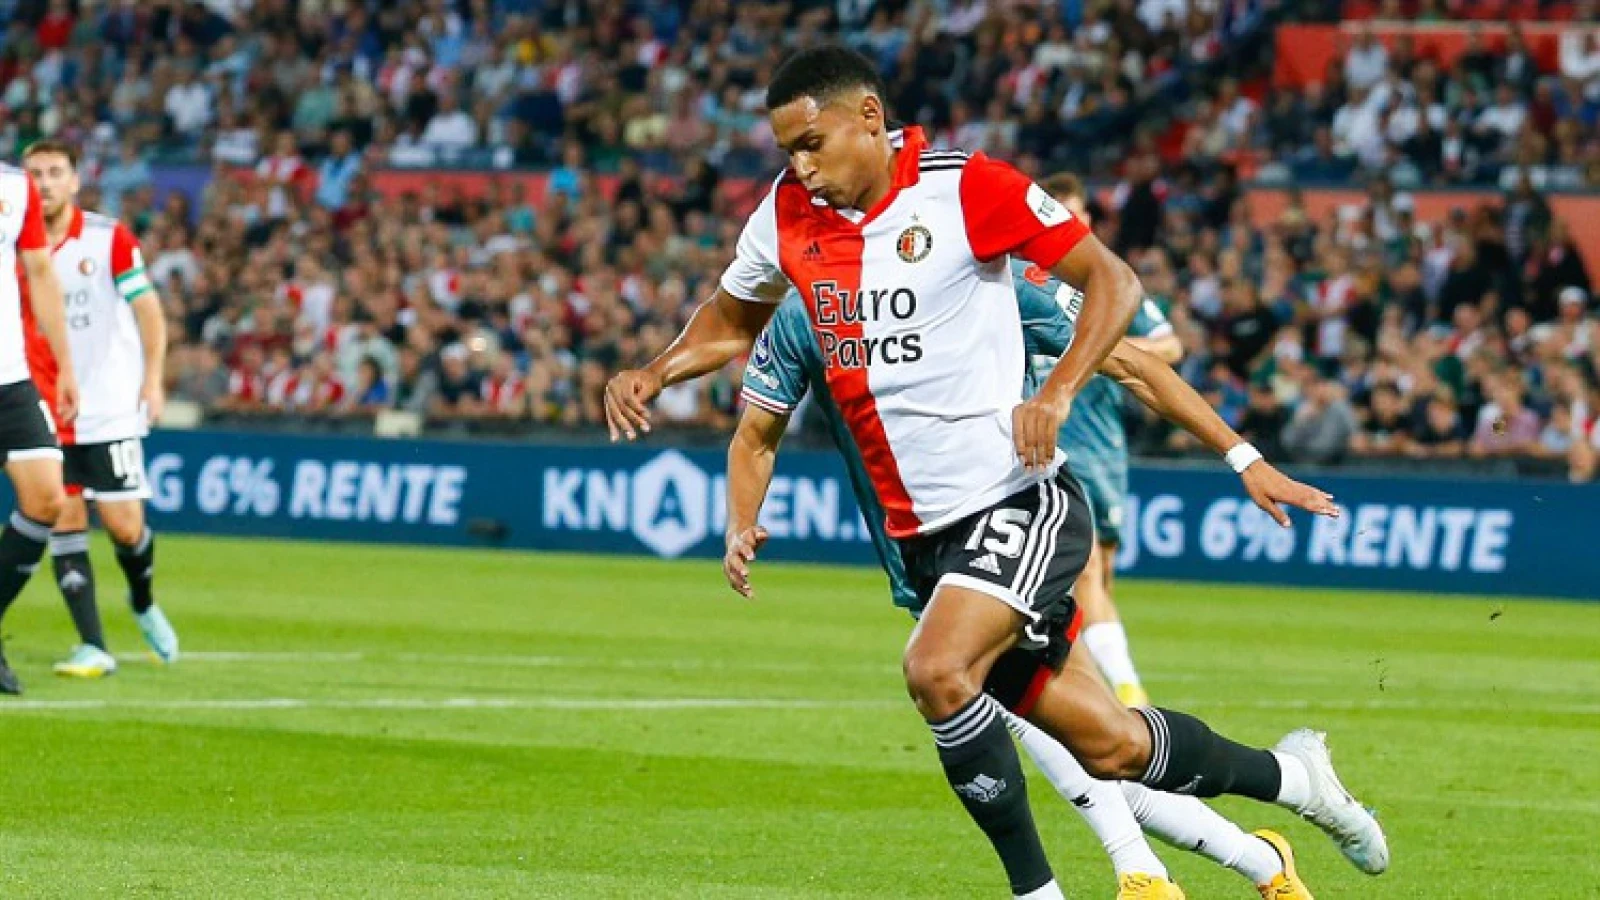 Lopez blikt terug op eerste officiële wedstrijd bij Feyenoord: 'Ik voelde me goed'